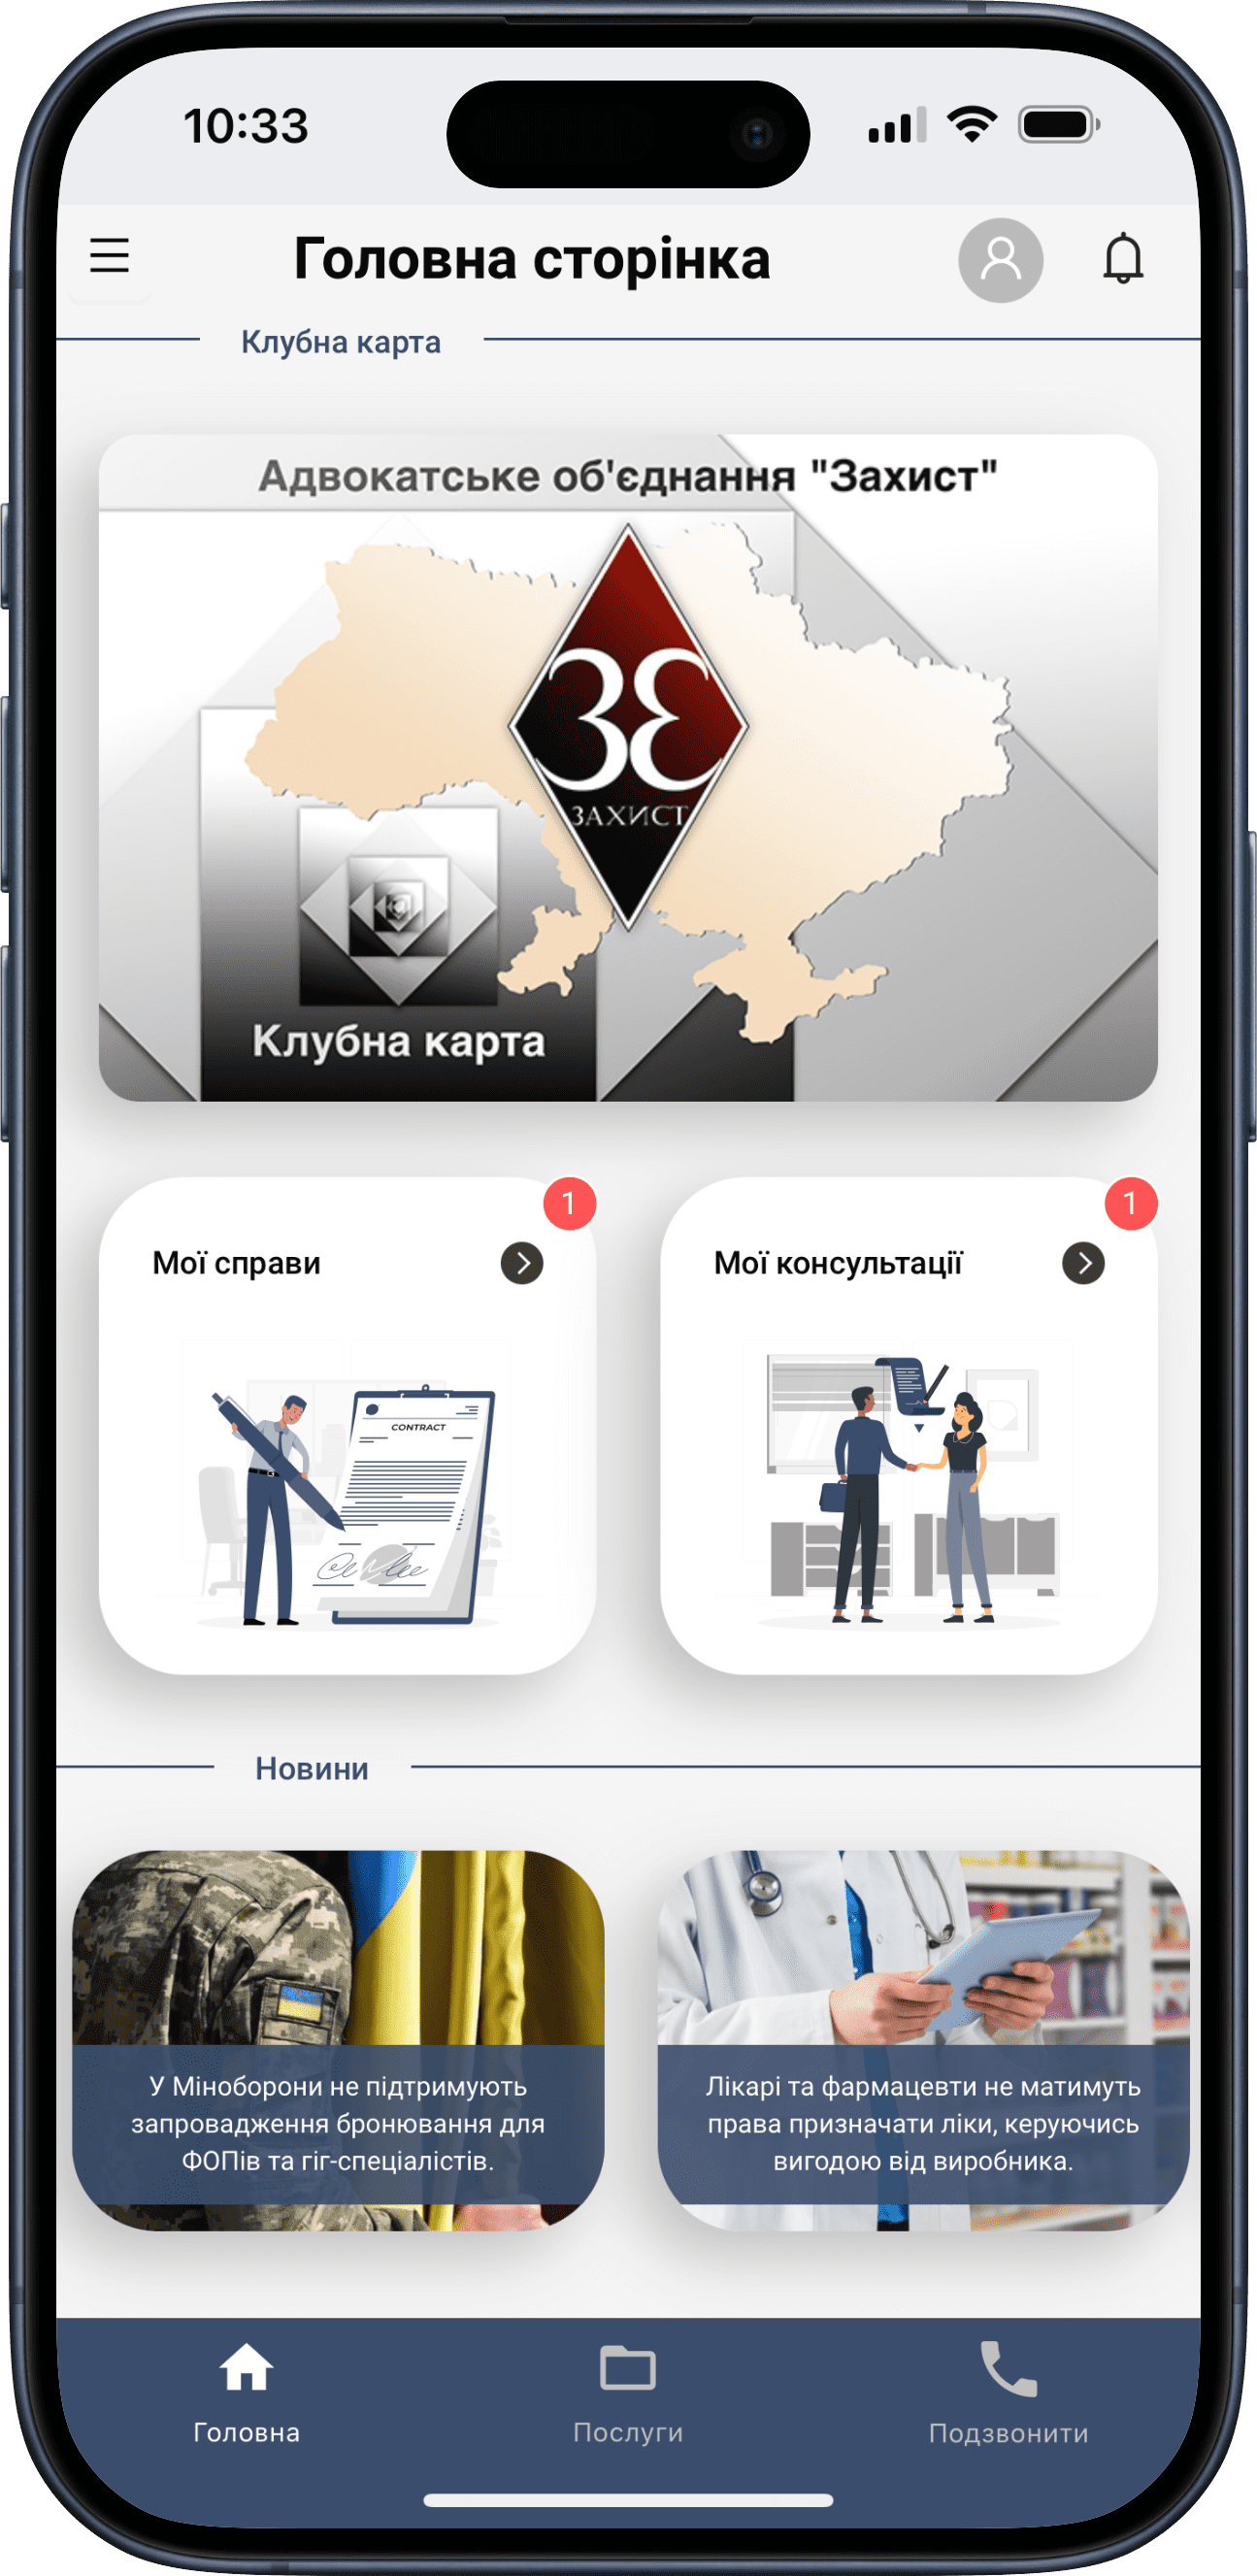 Abbildung der mobilen App für Kunden der Anwaltsvereinigung «Schutz», die eine umfangreiche und flexible Funktionalität bietet, mit der der Kunde in Echtzeit an seinem Fall arbeiten kann.